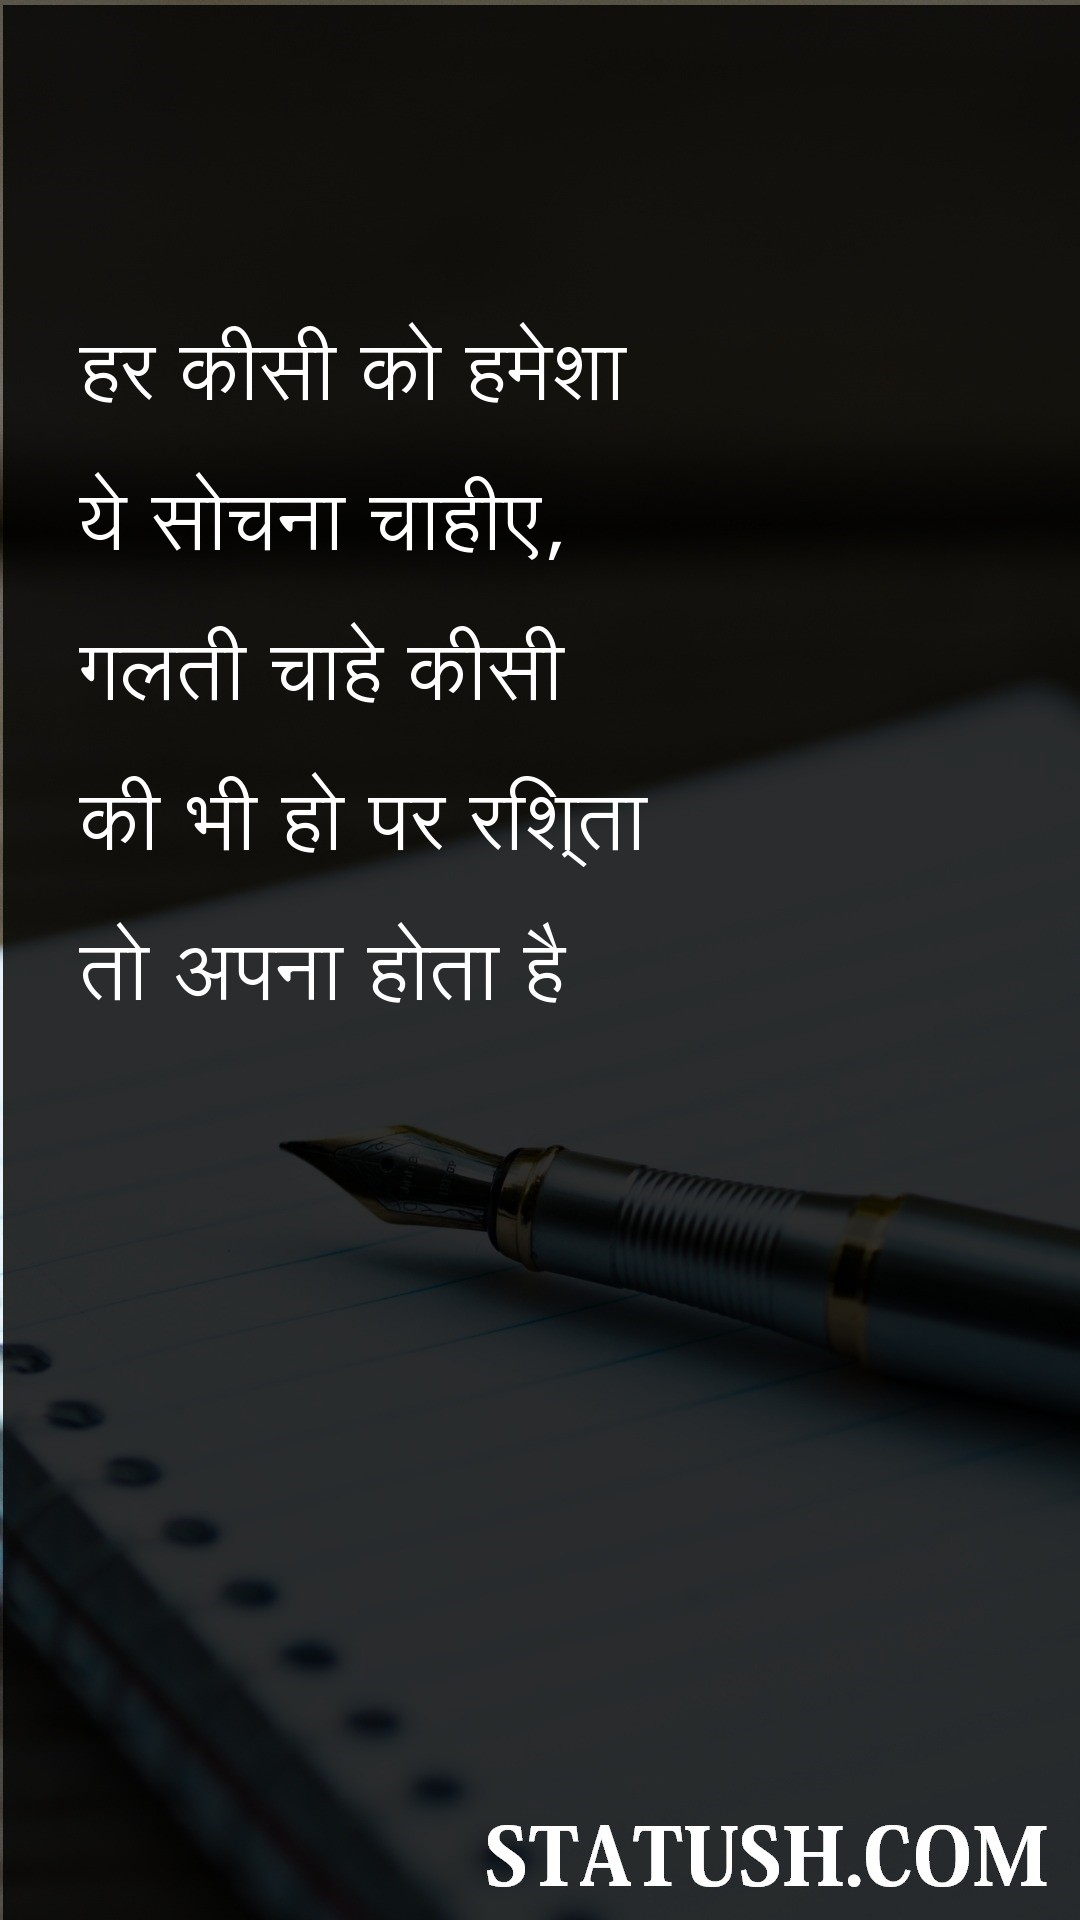 Everyone should always think Hindi Quotes at statush.com